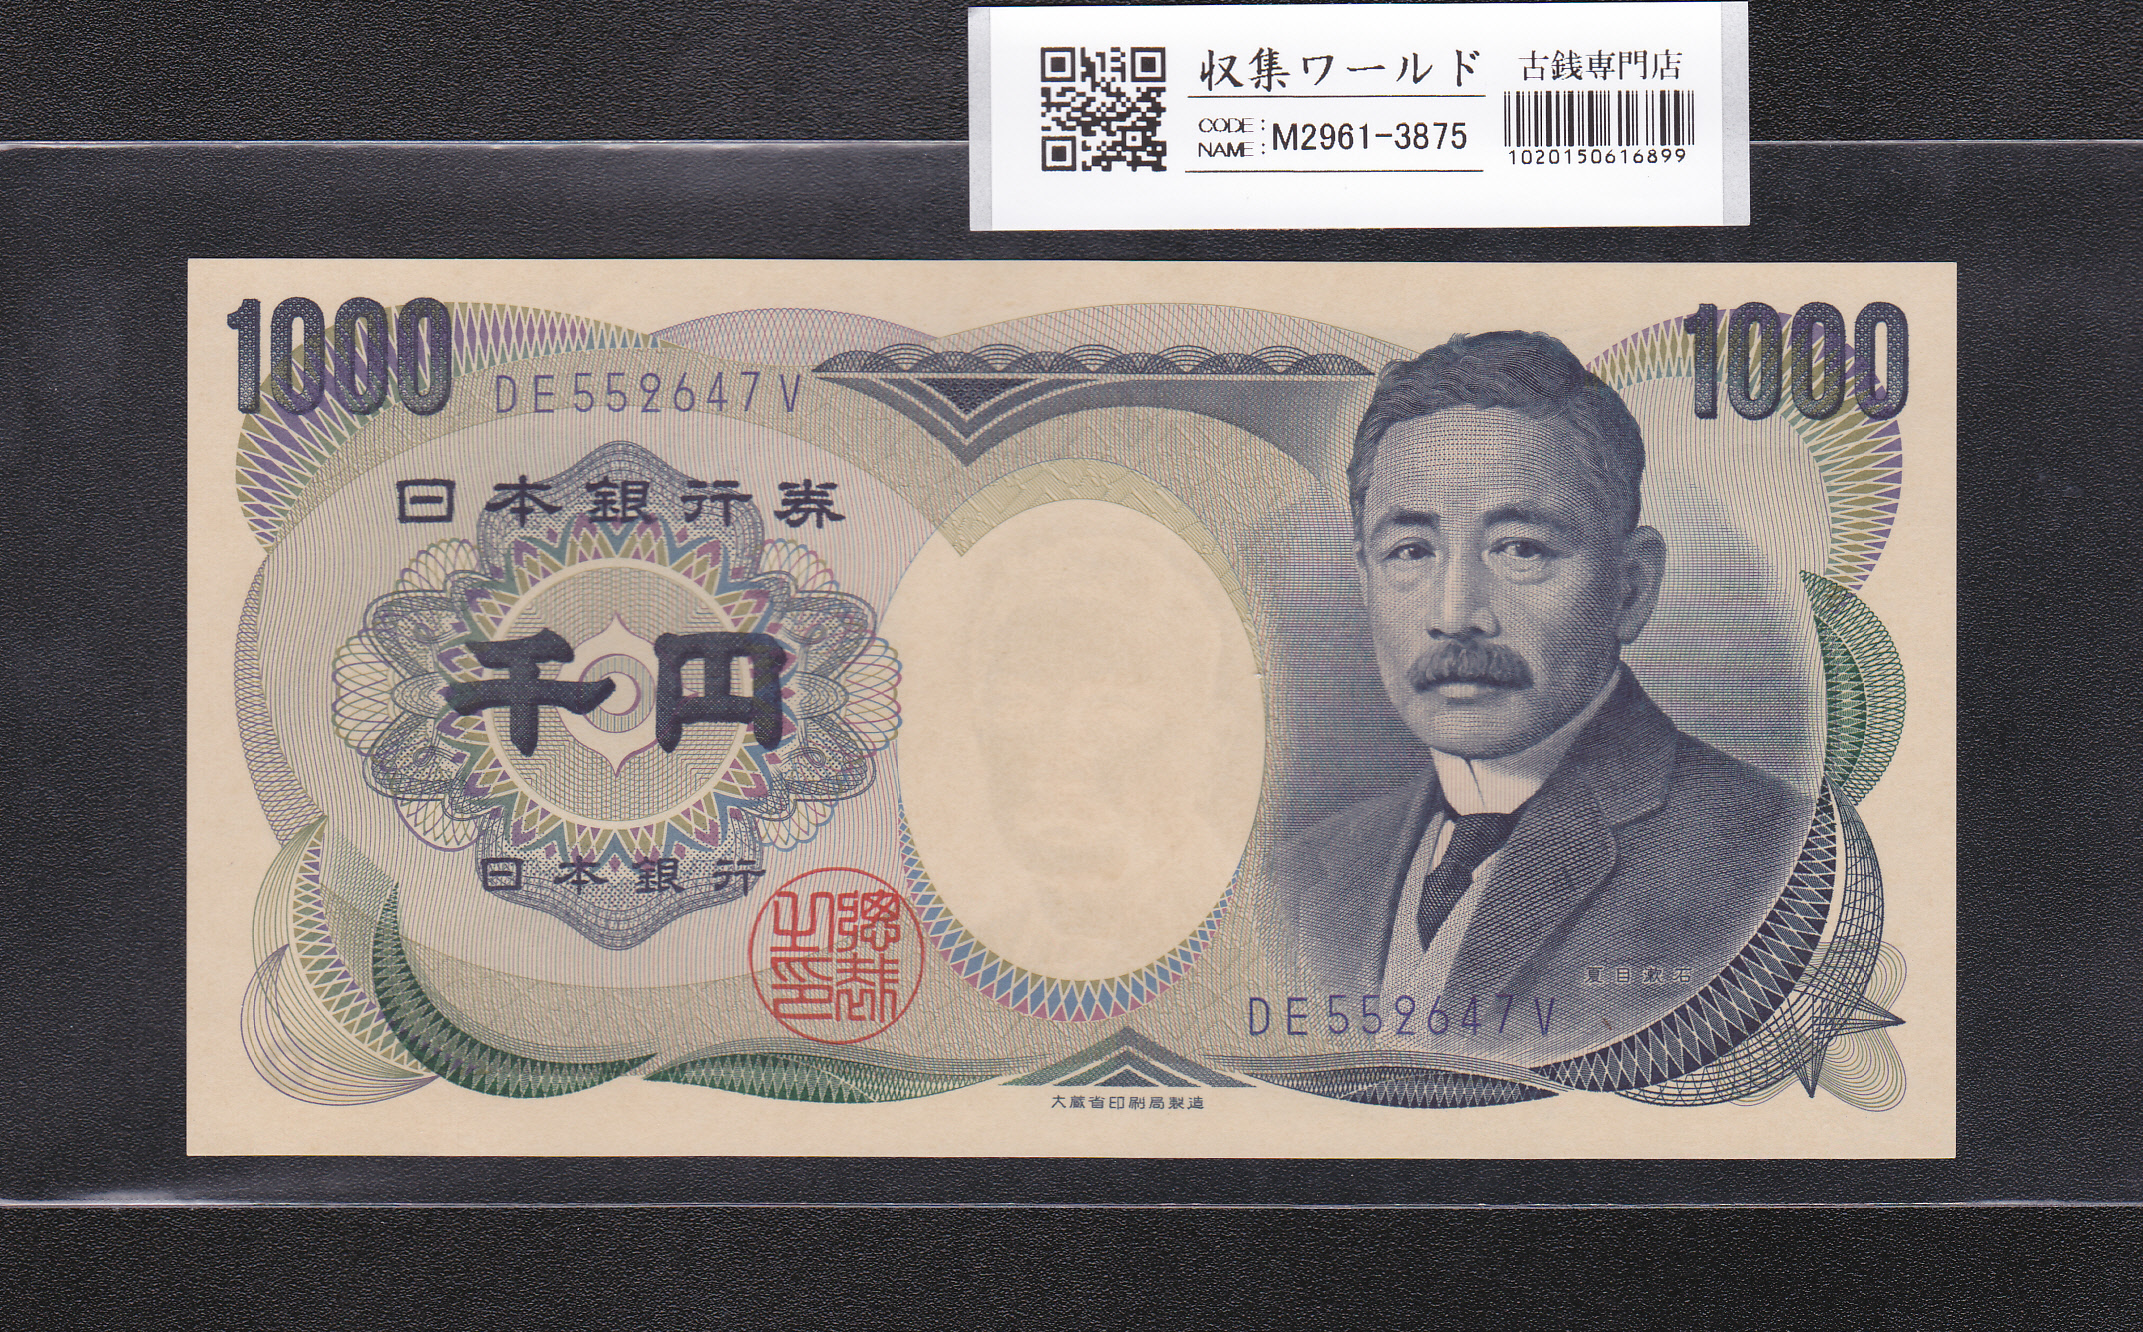 夏目漱石 1000円札/大蔵省銘 1990年 青色 後期/2桁 DE552647V 未使用